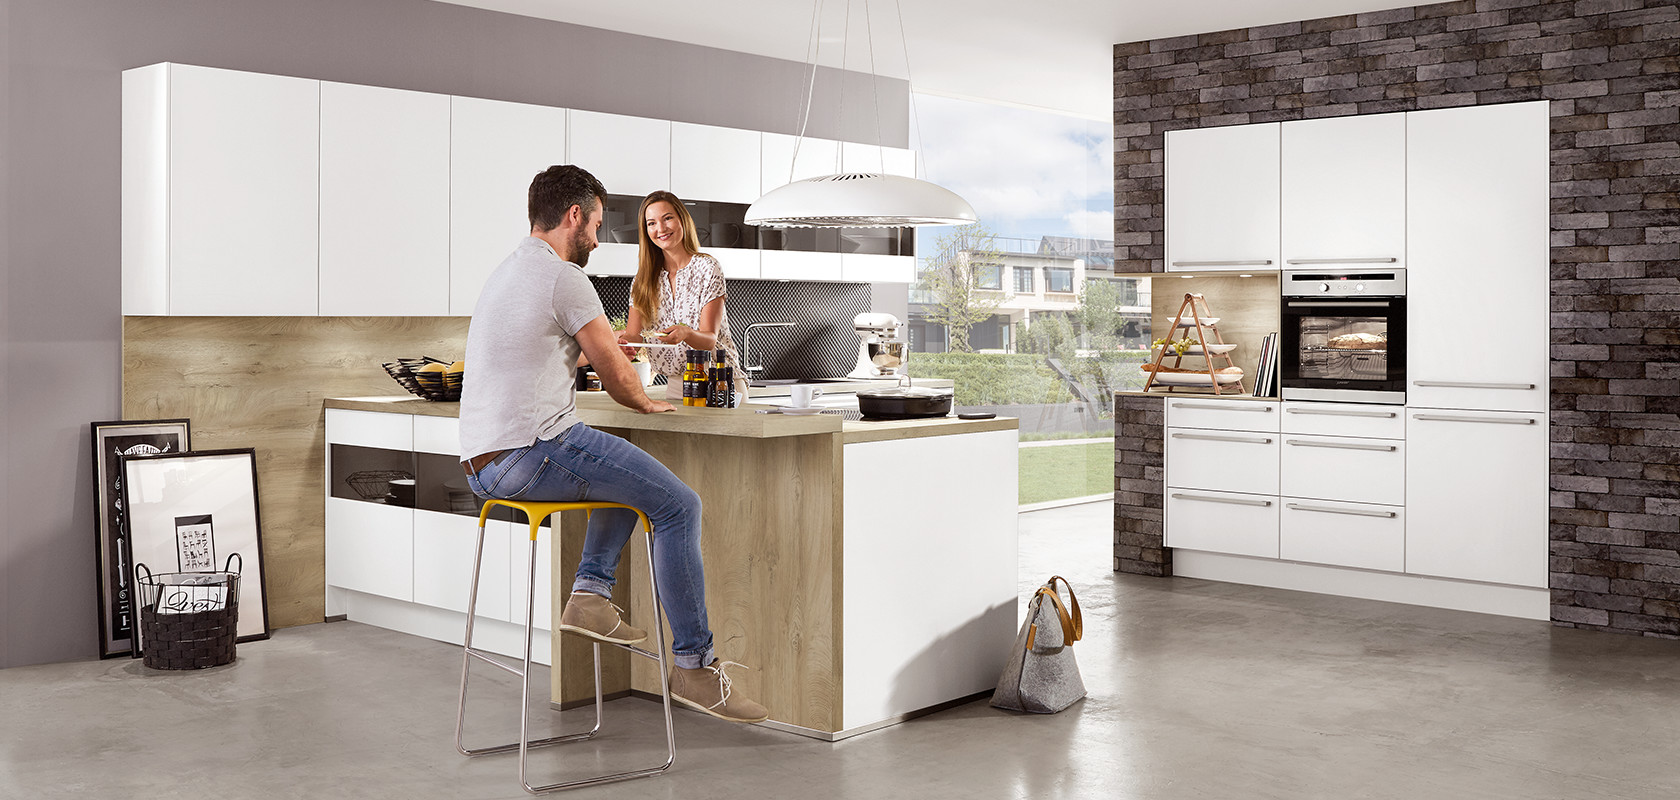 Eine moderne Kücheneinstellung mit einem lächelnden Paar, das an einer Kochinsel arbeitet, mit eleganten Geräten und minimalistischem Designästhetik.